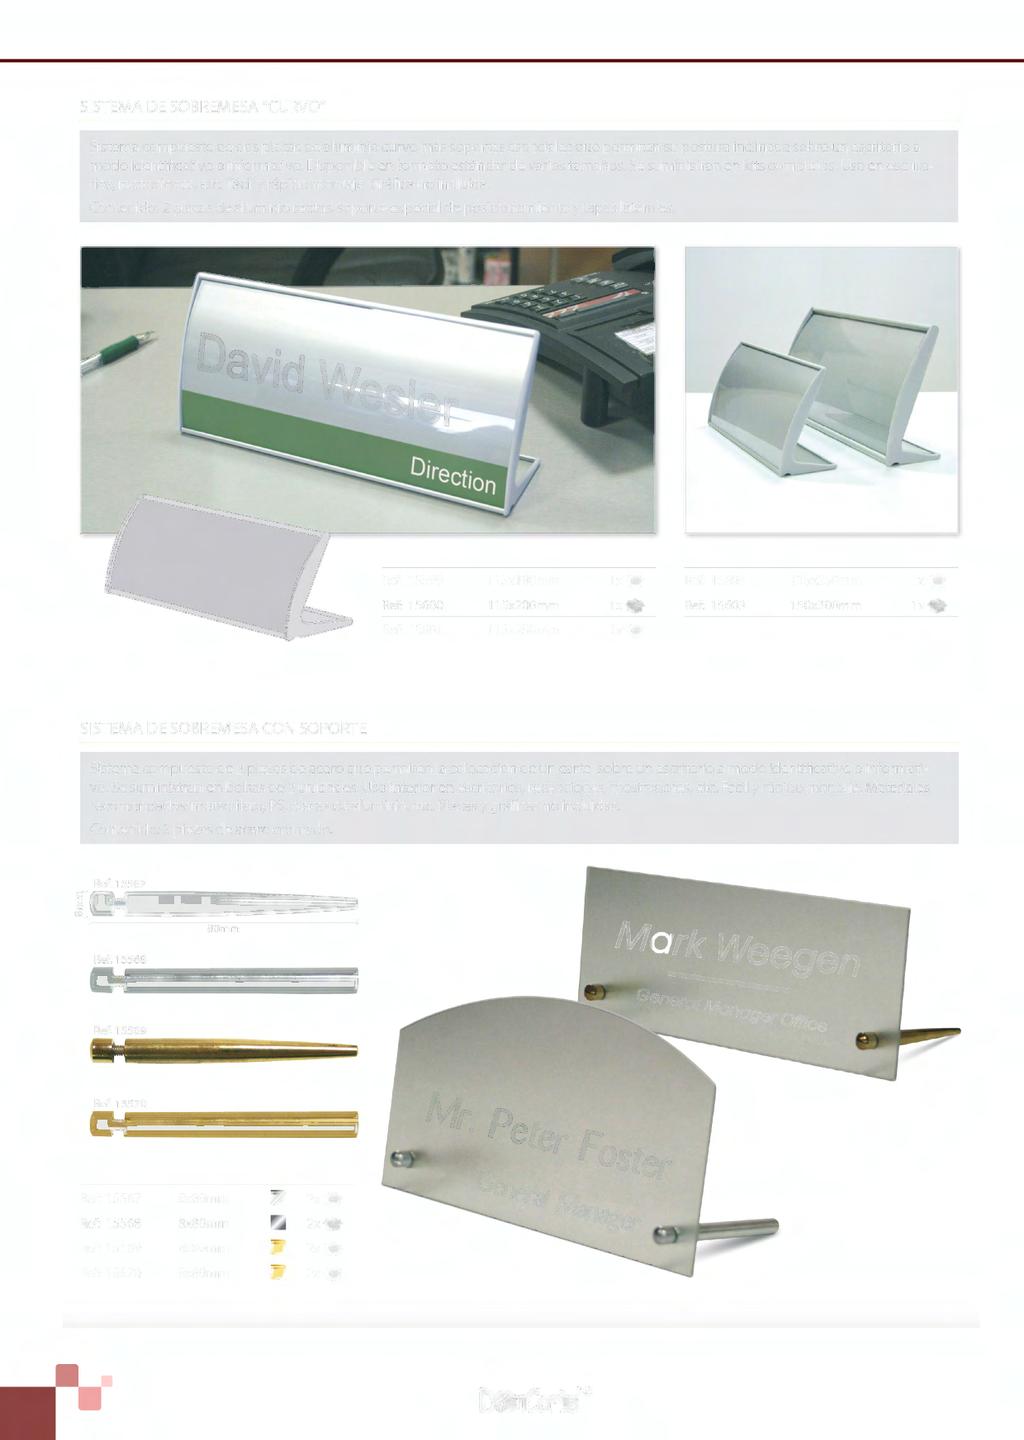 SISTEMA DE SOBREMESA "CURVO" Sistema compuesto de dos placas de aluminio curvo más soportes especiales que permiten su postura inclinada sobre un escritorio a modo identificativo o informativo.